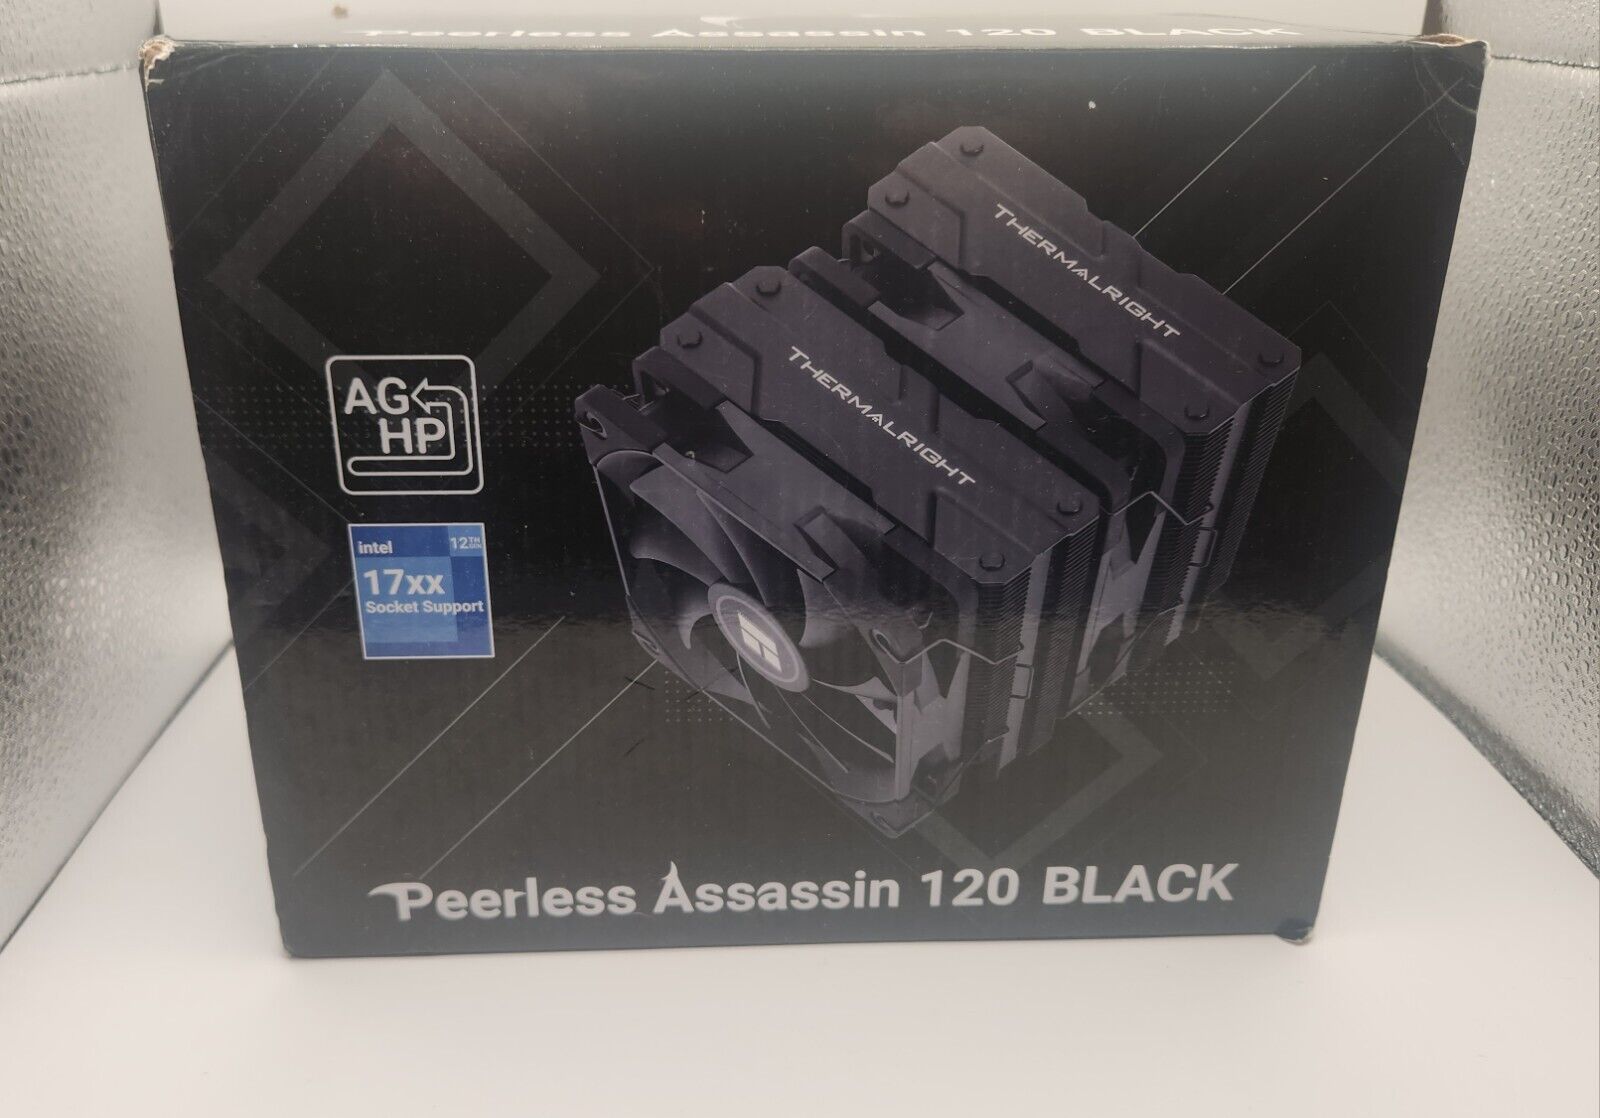 NEW Thermalright Peerless Assassin 120 Black CPU Air Cooler Heatsink AGHP Tech